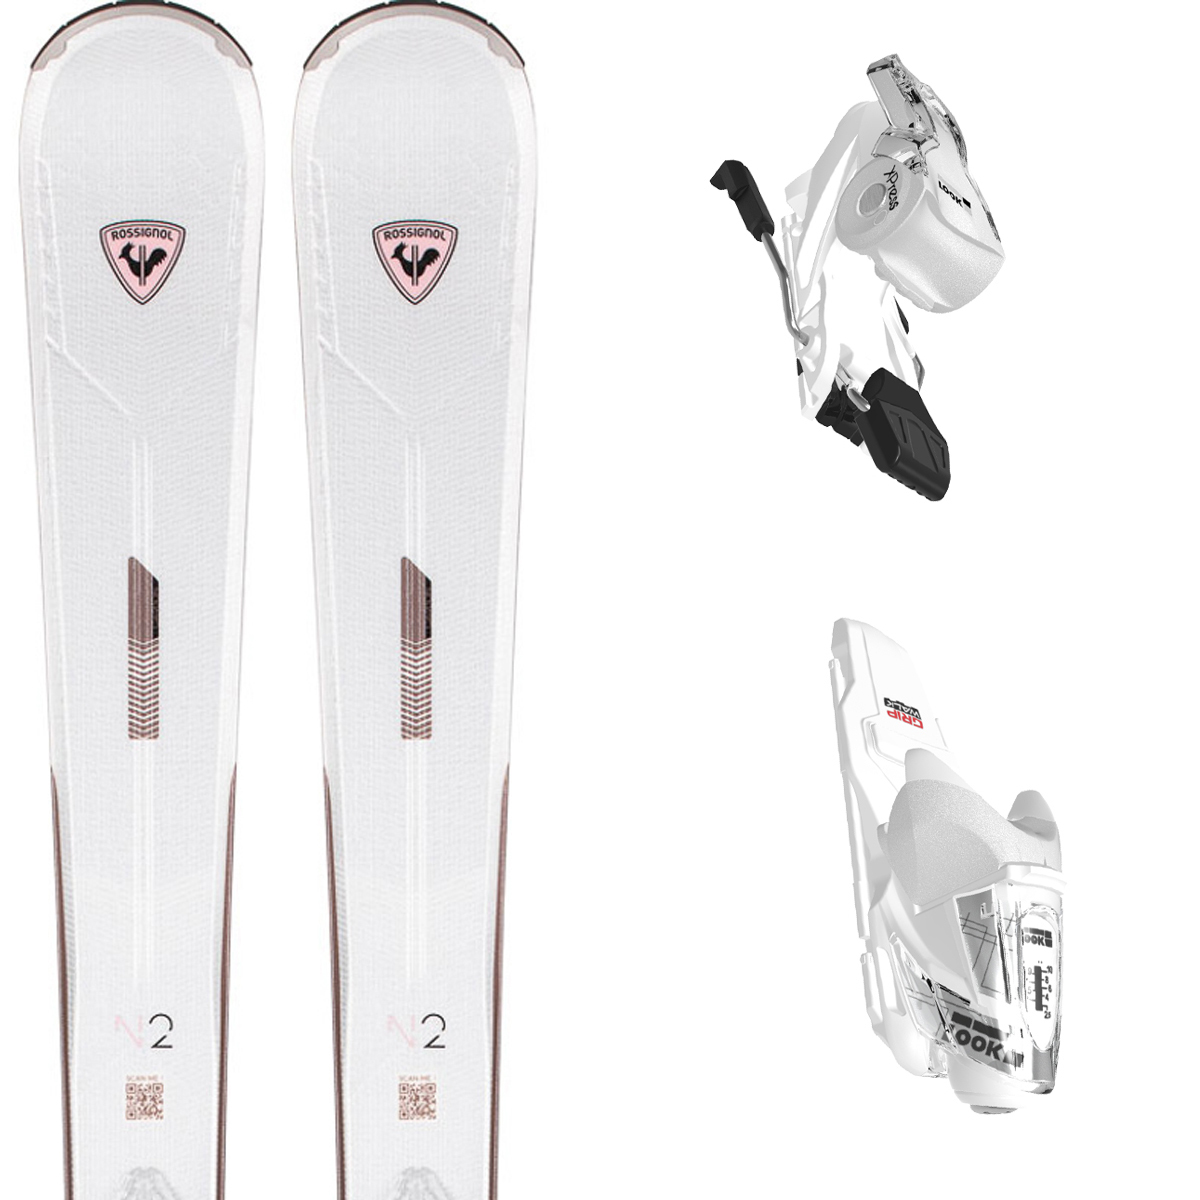 スキー セット 3点 メンズ レディース ROSSIGNOL スキー板 2022 REACT R2 XPRESS   XPRESS 10 GW B83  DALBELLO ブーツ DS120GW